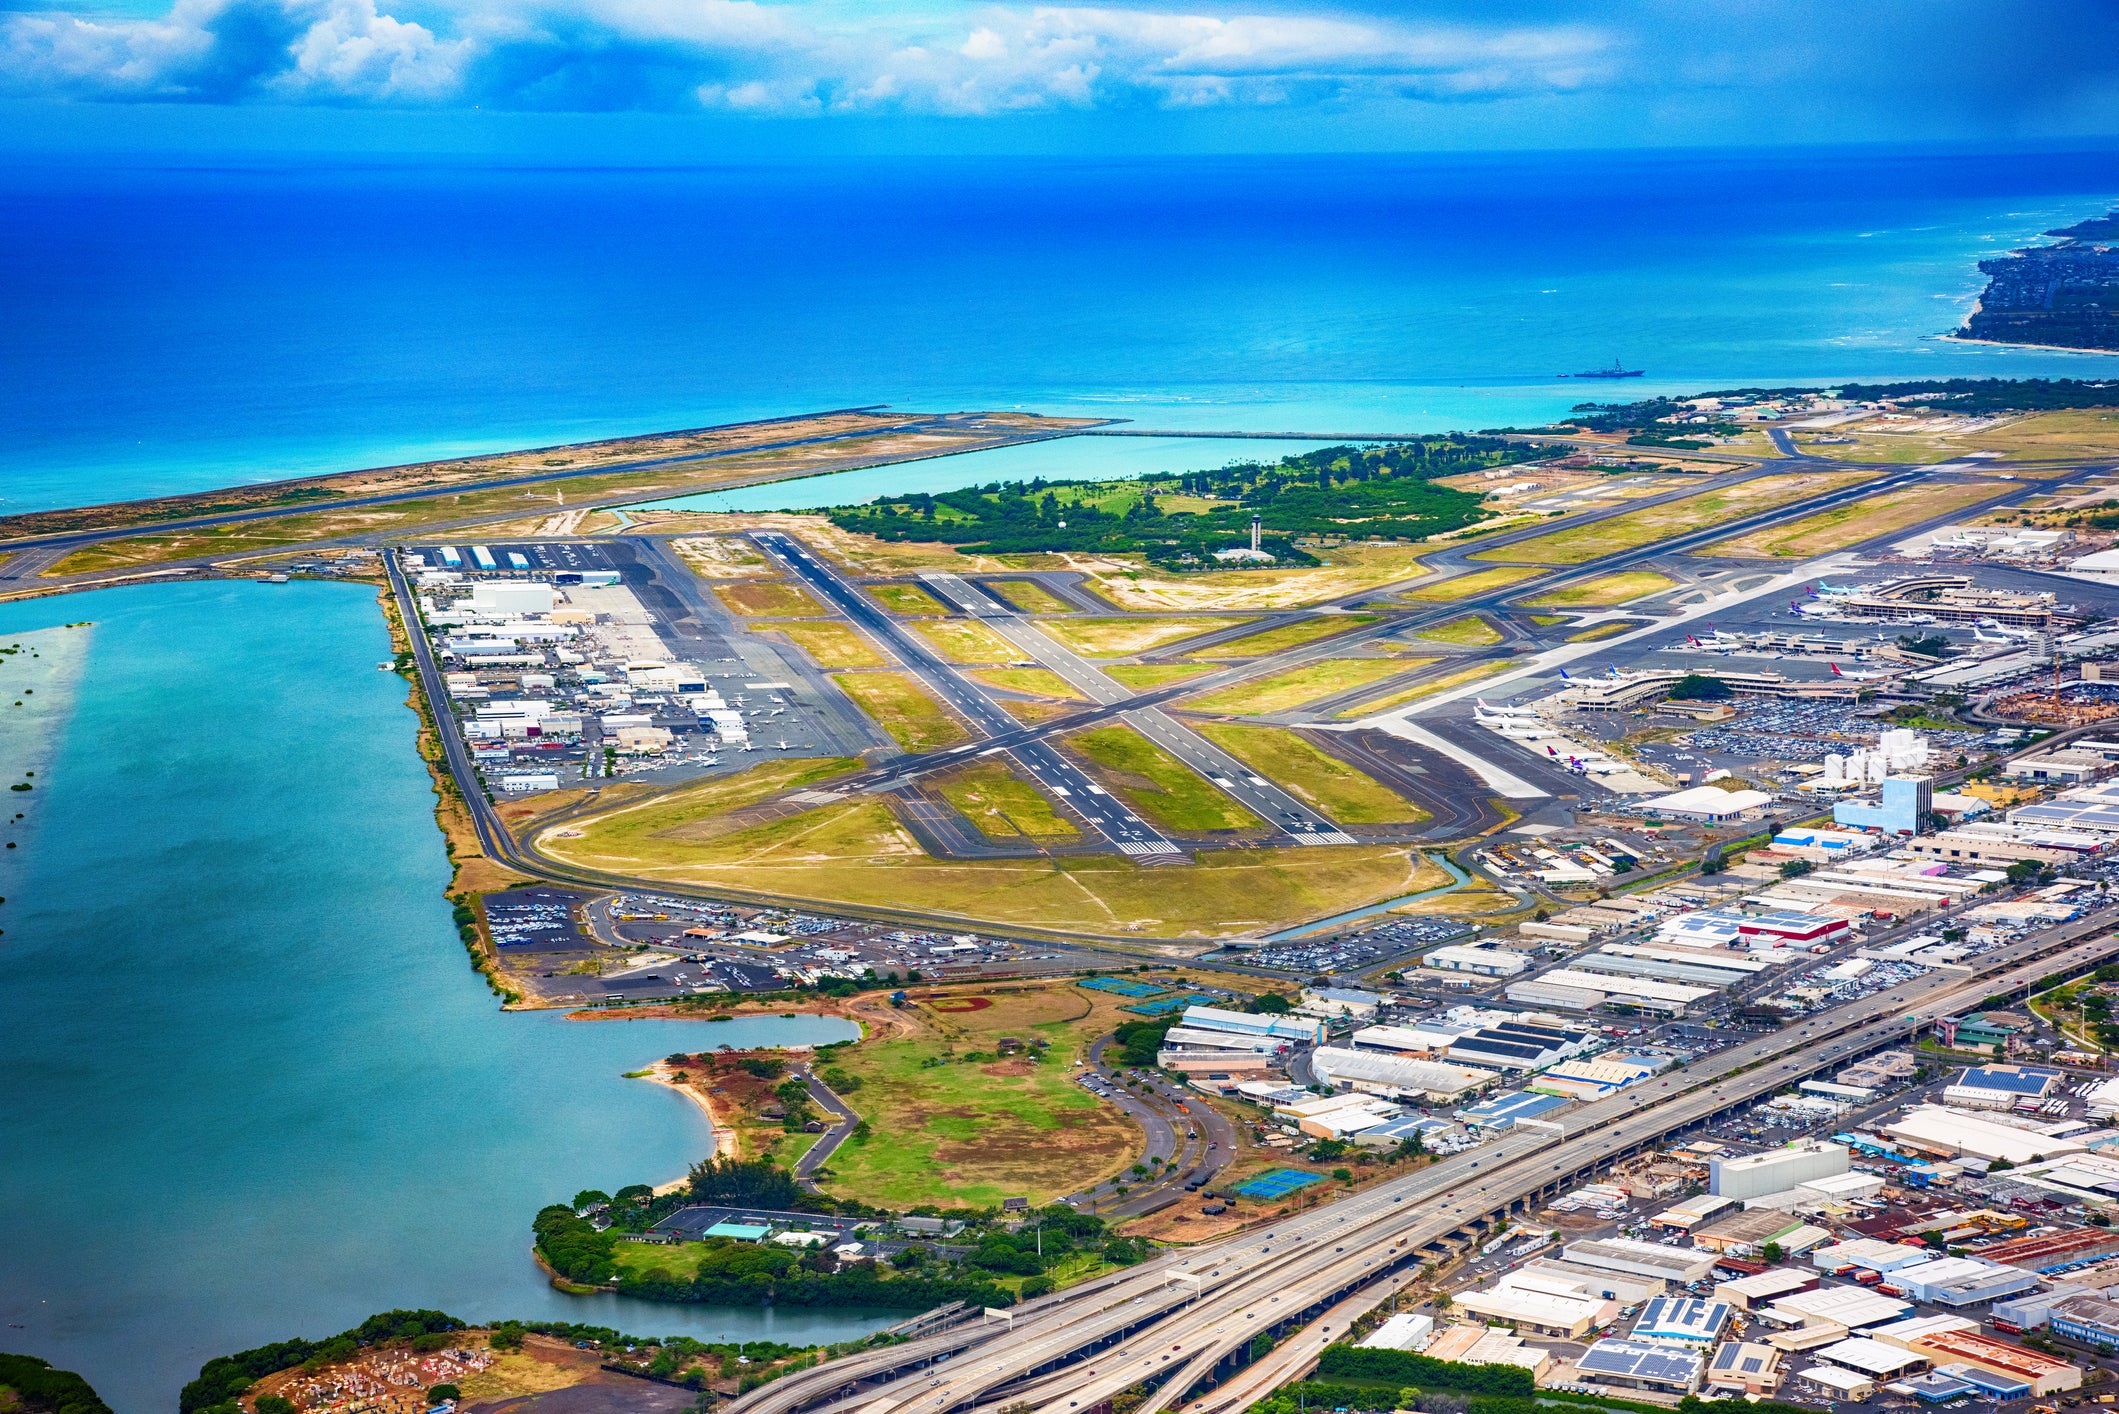 Aerial view of Honolulu International Airport